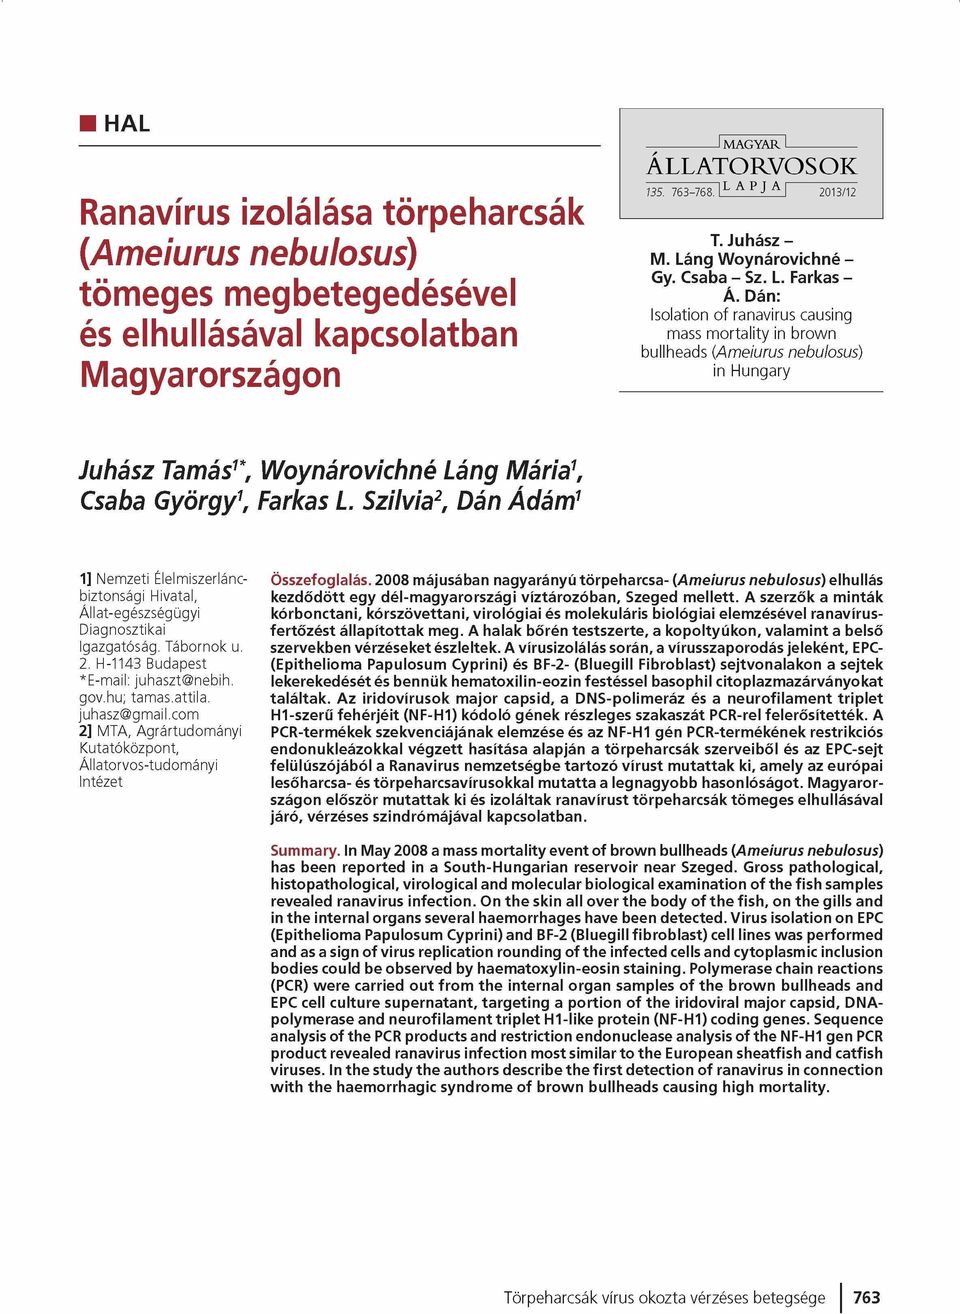 Dán: Isolation o f ranavirus causing mass m o rtality in brow n bullheads (A m eiurus nebulosus) in Hungary Juhász Tamás1*, Woynárovichné Láng Mária1, Csaba György1, Farkas L.